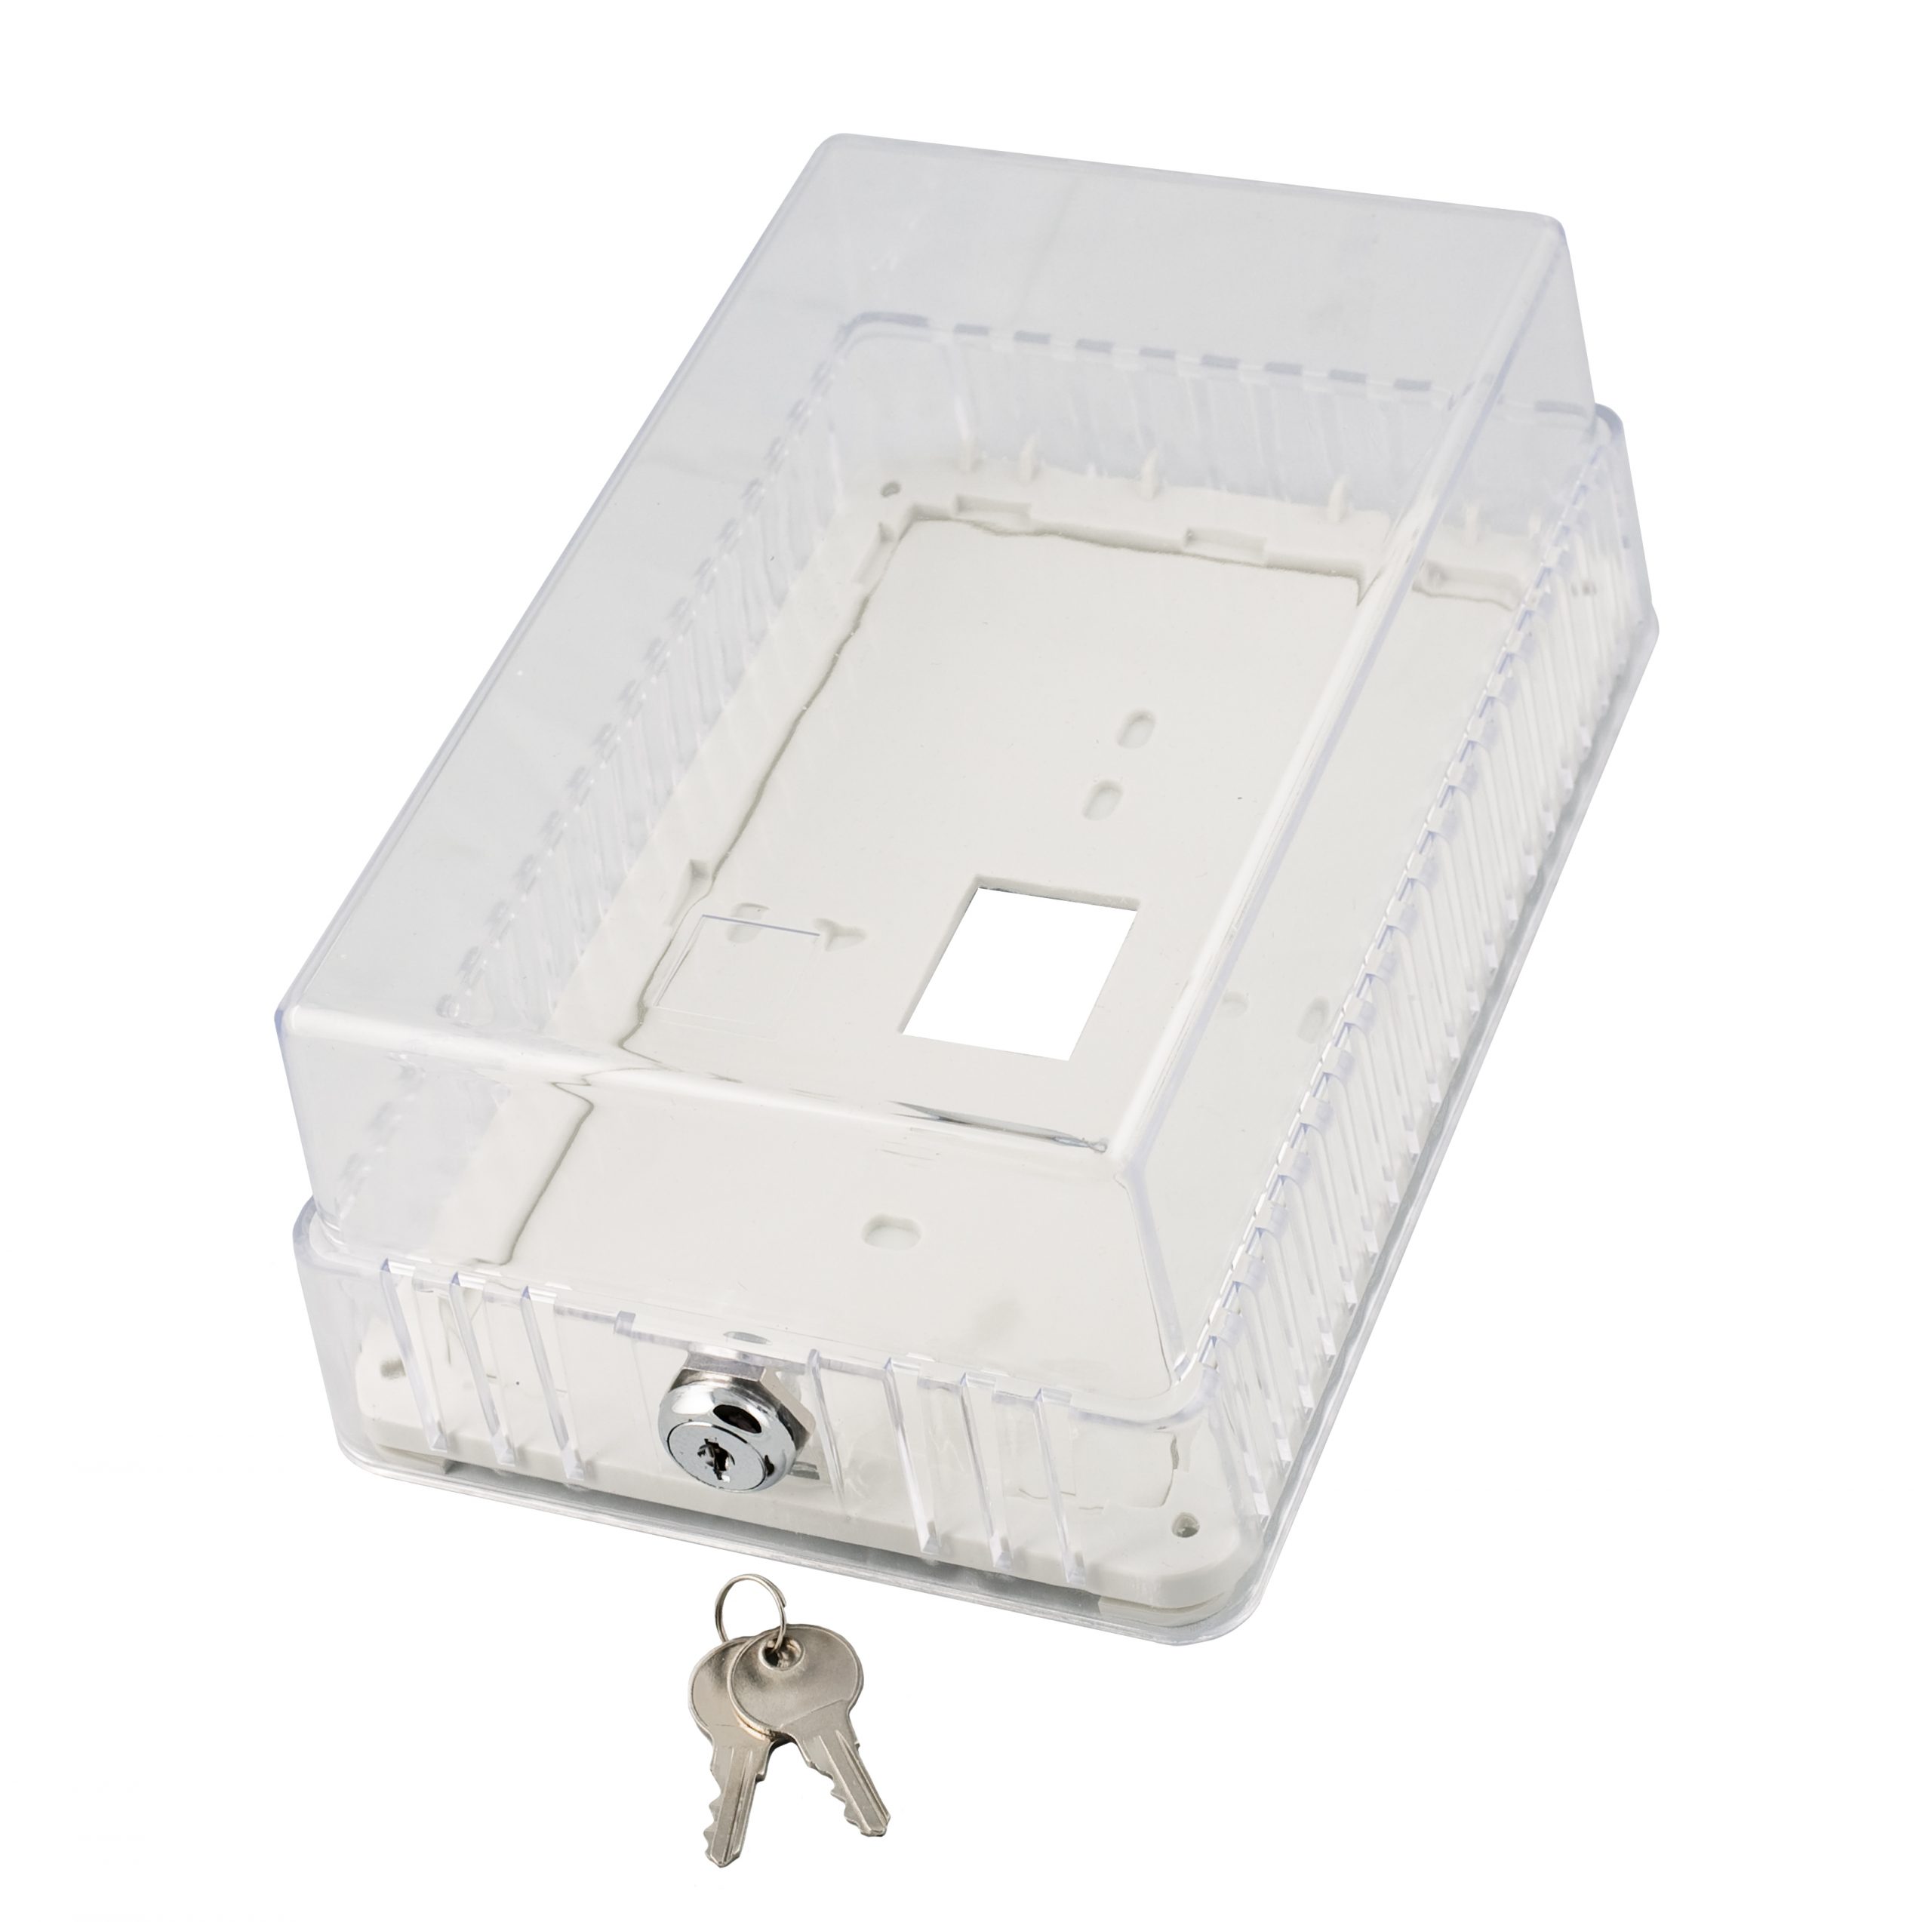 TP02CL Thermostat Guard  Plastic, Medium - 7.80 x 5.00 x 3.35